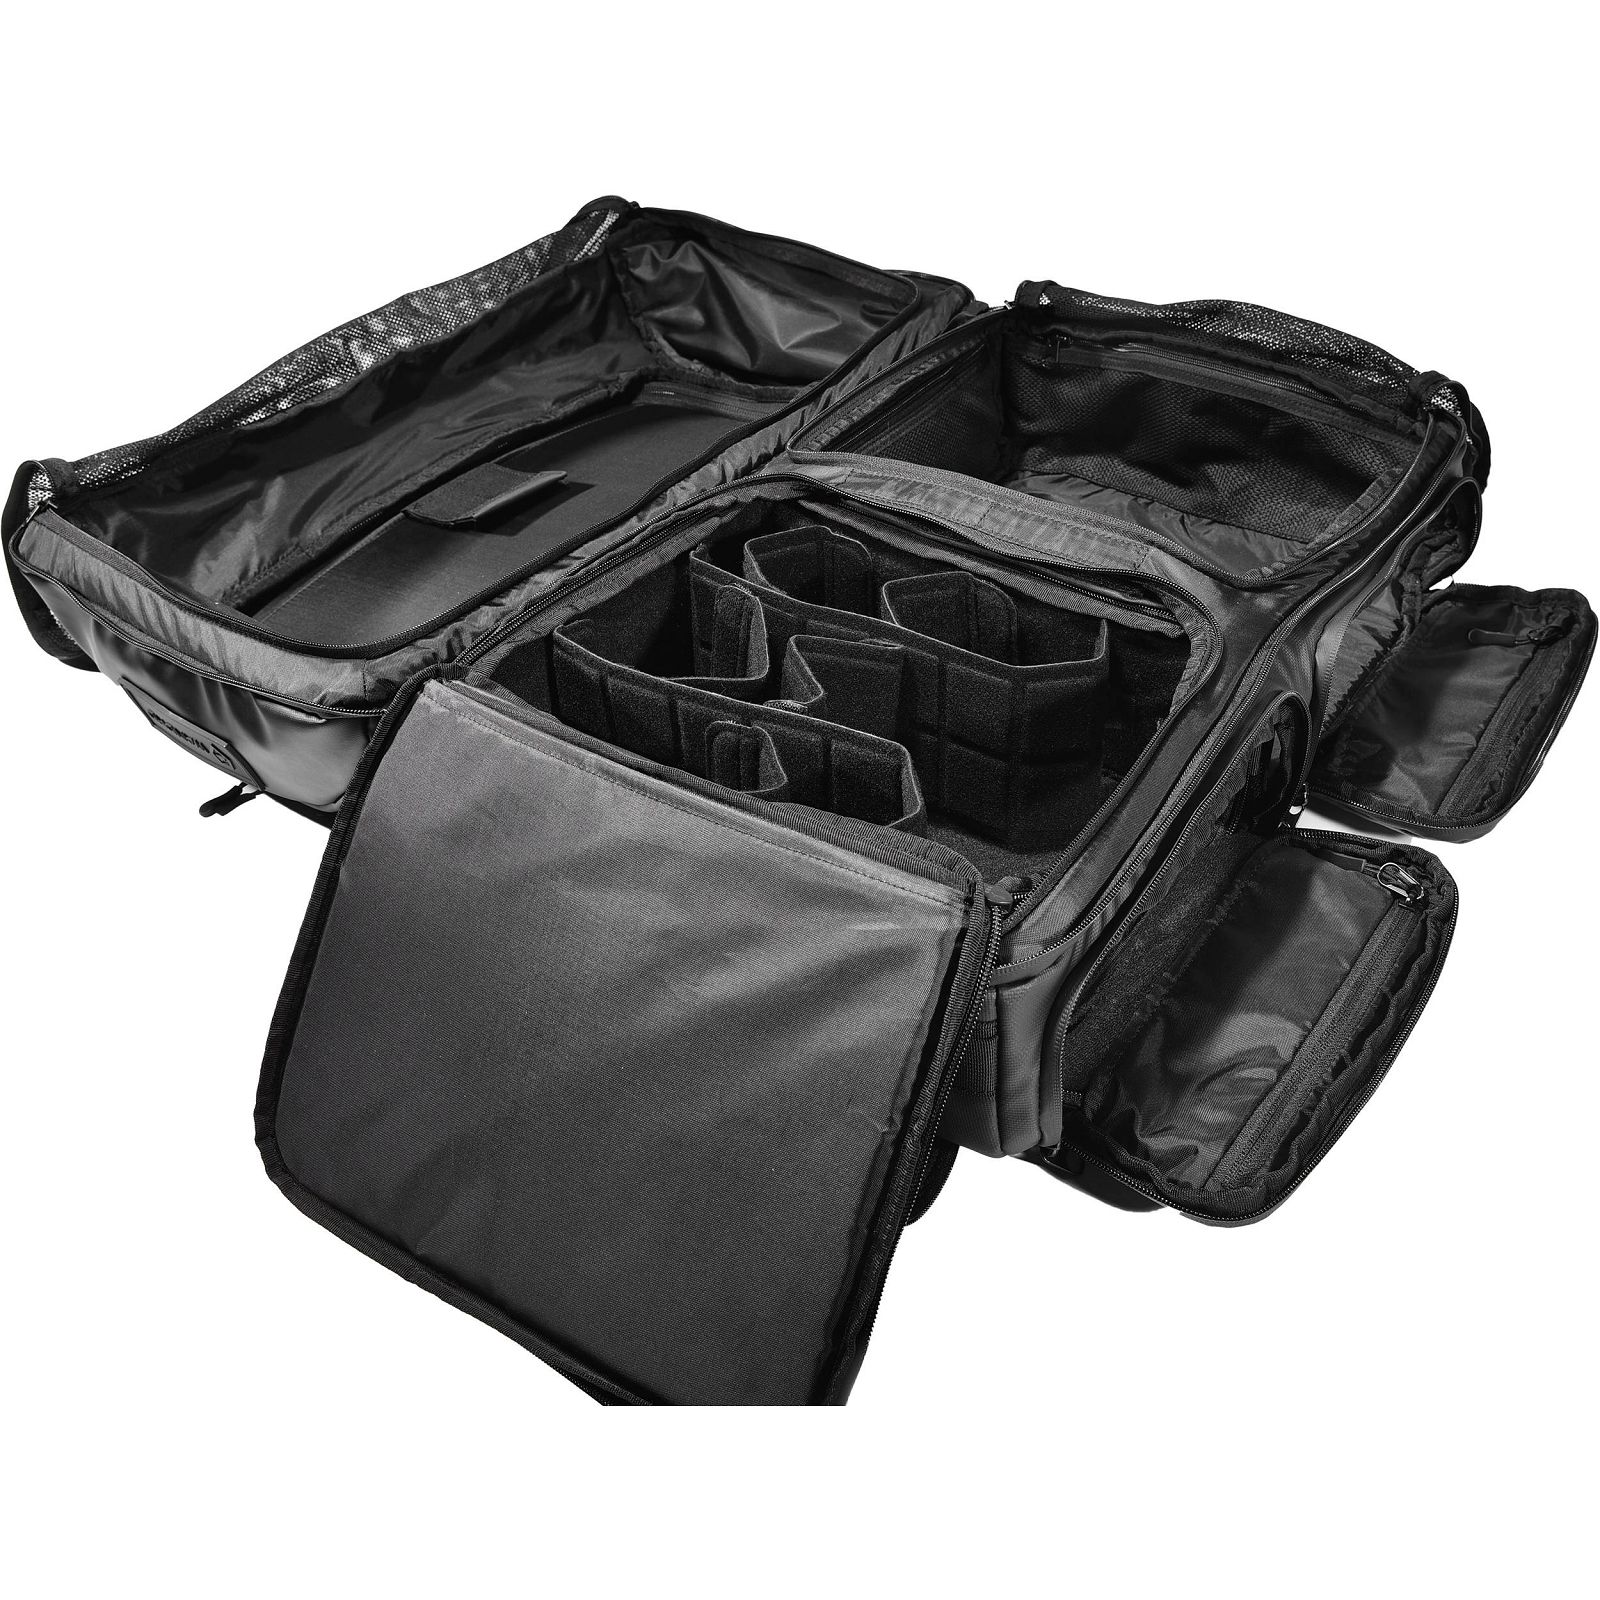 Wandrd Hexad Access Duffel 45l Black putni ruksak torba za foto opremu